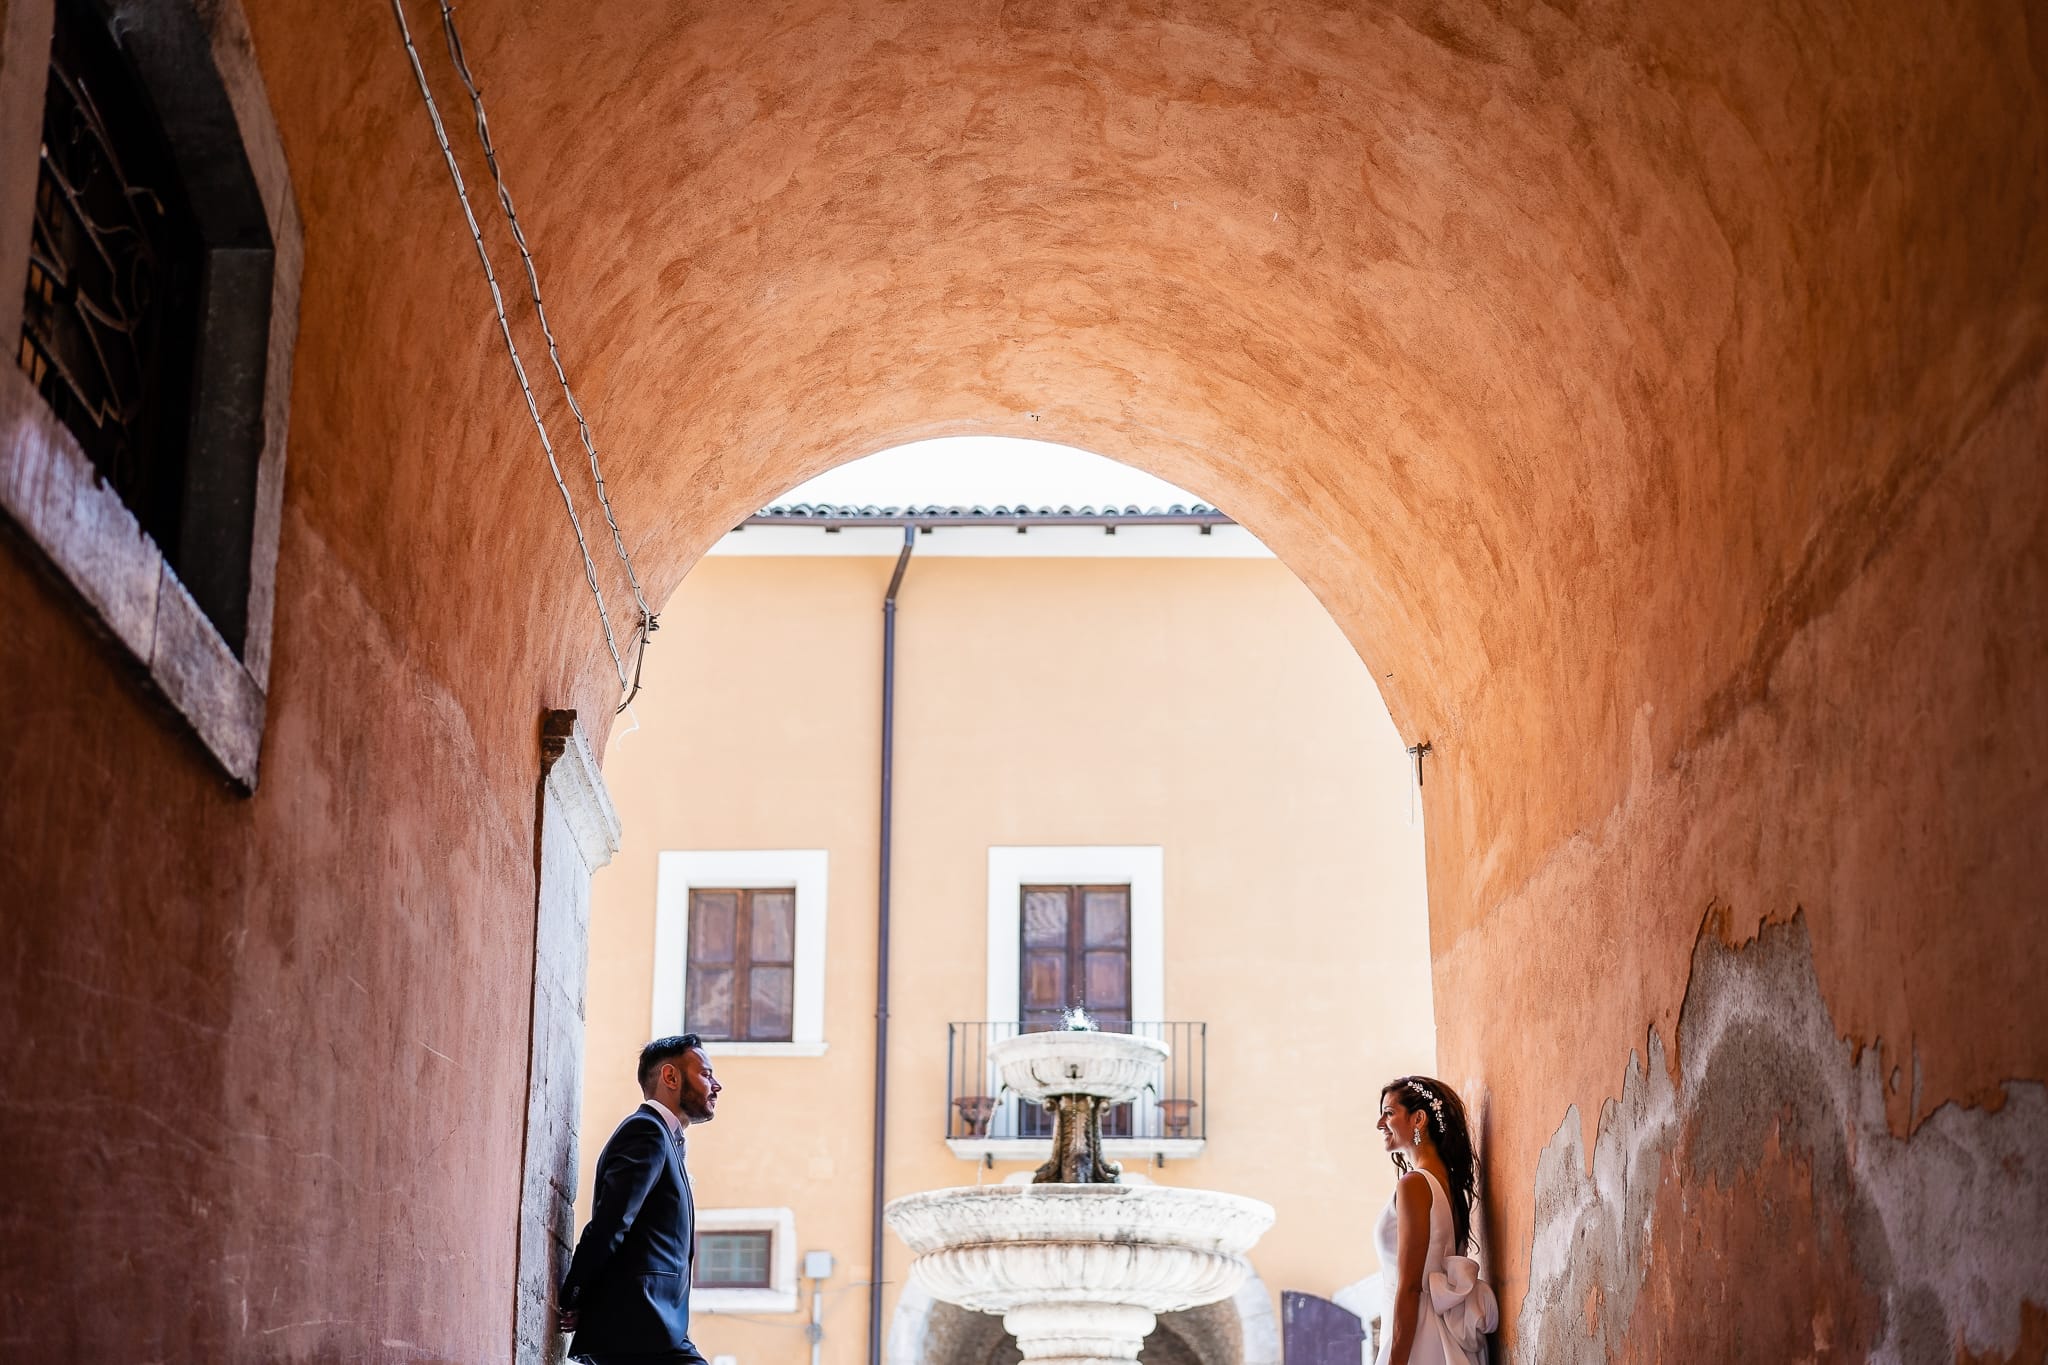 Tania Matteo Matrimonio a Sulmona in Abruzzo momenti brindisi ritratti sposi pettorano sul gizio